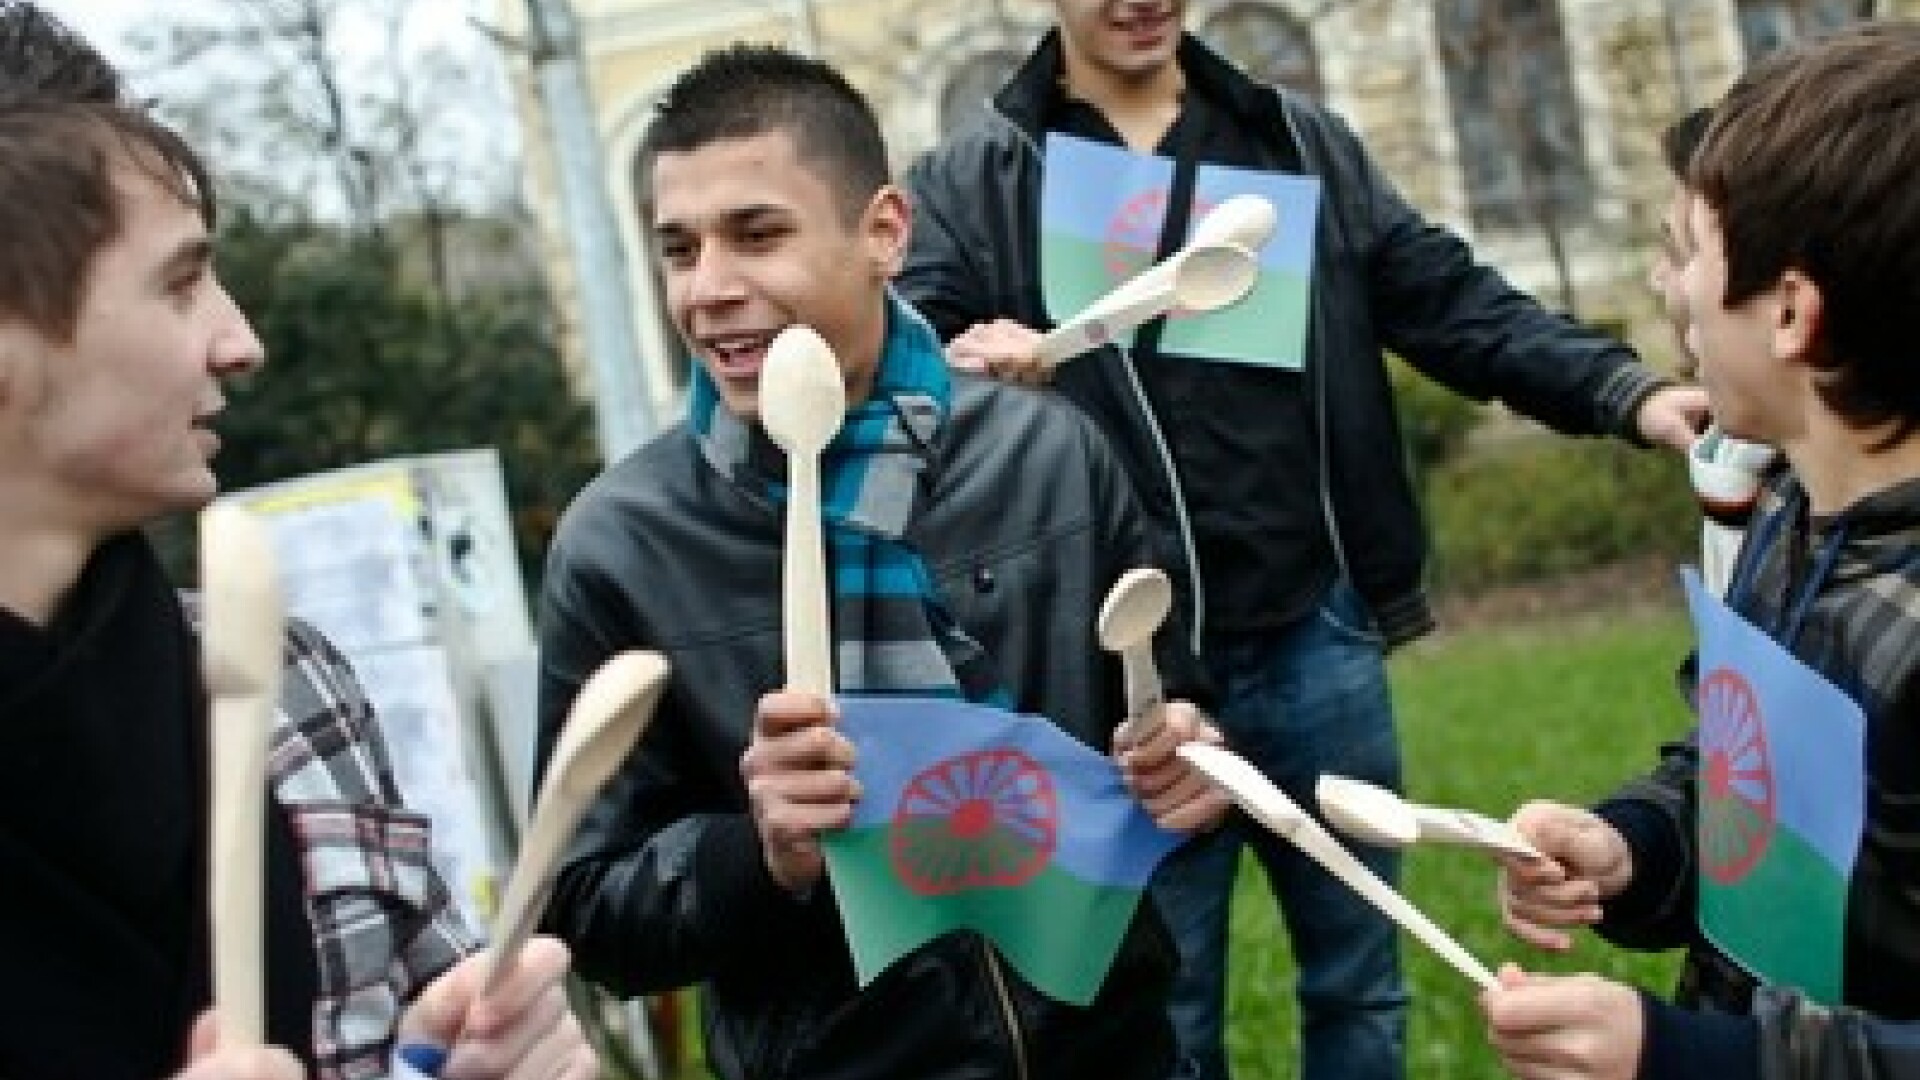 Reprezentanti ai unor ONG-uri care militeaza pentru drepturile romilor